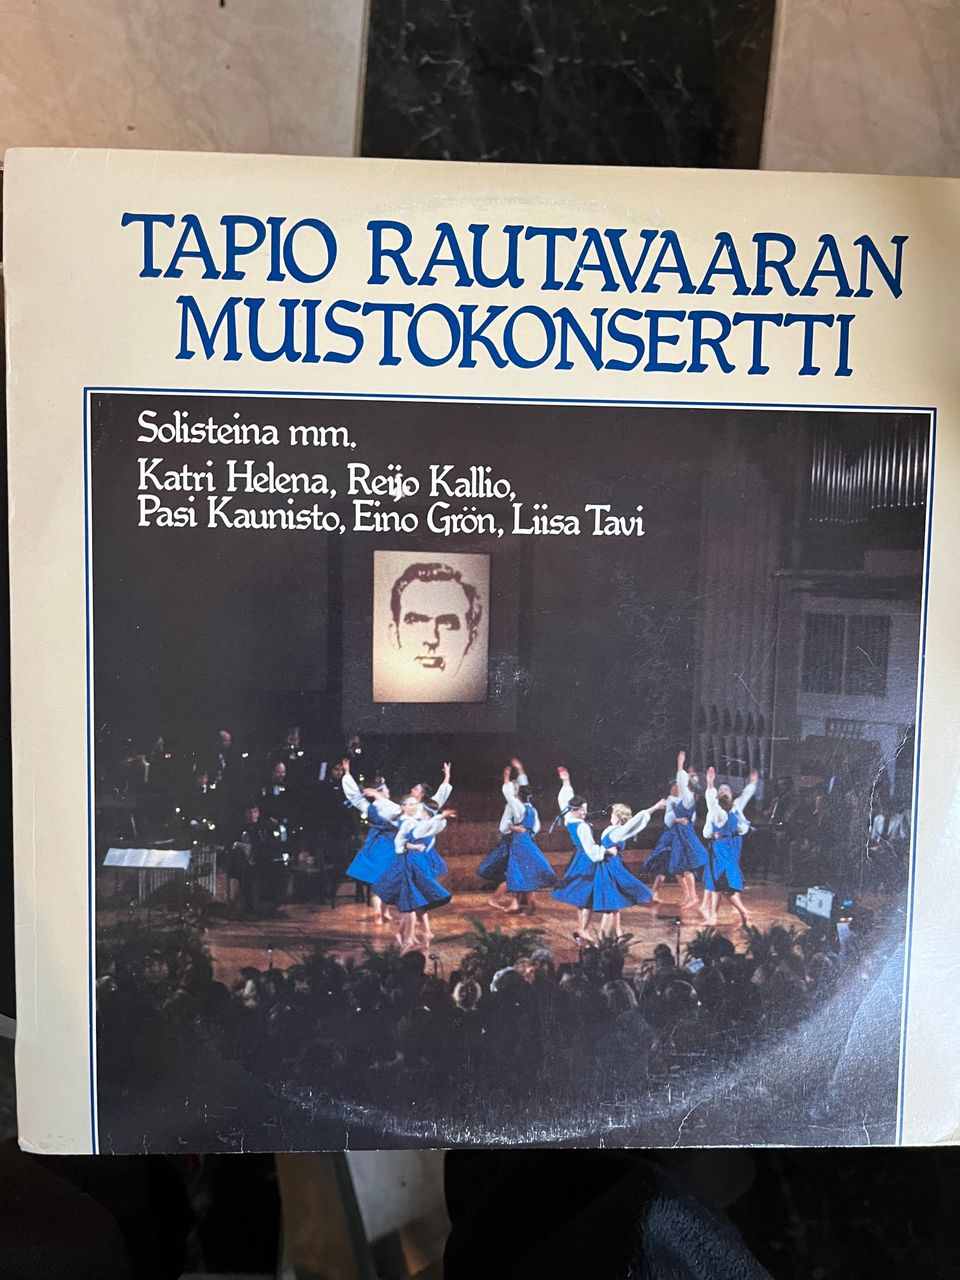 Tapio Rautavaaran Muistokonsertti.